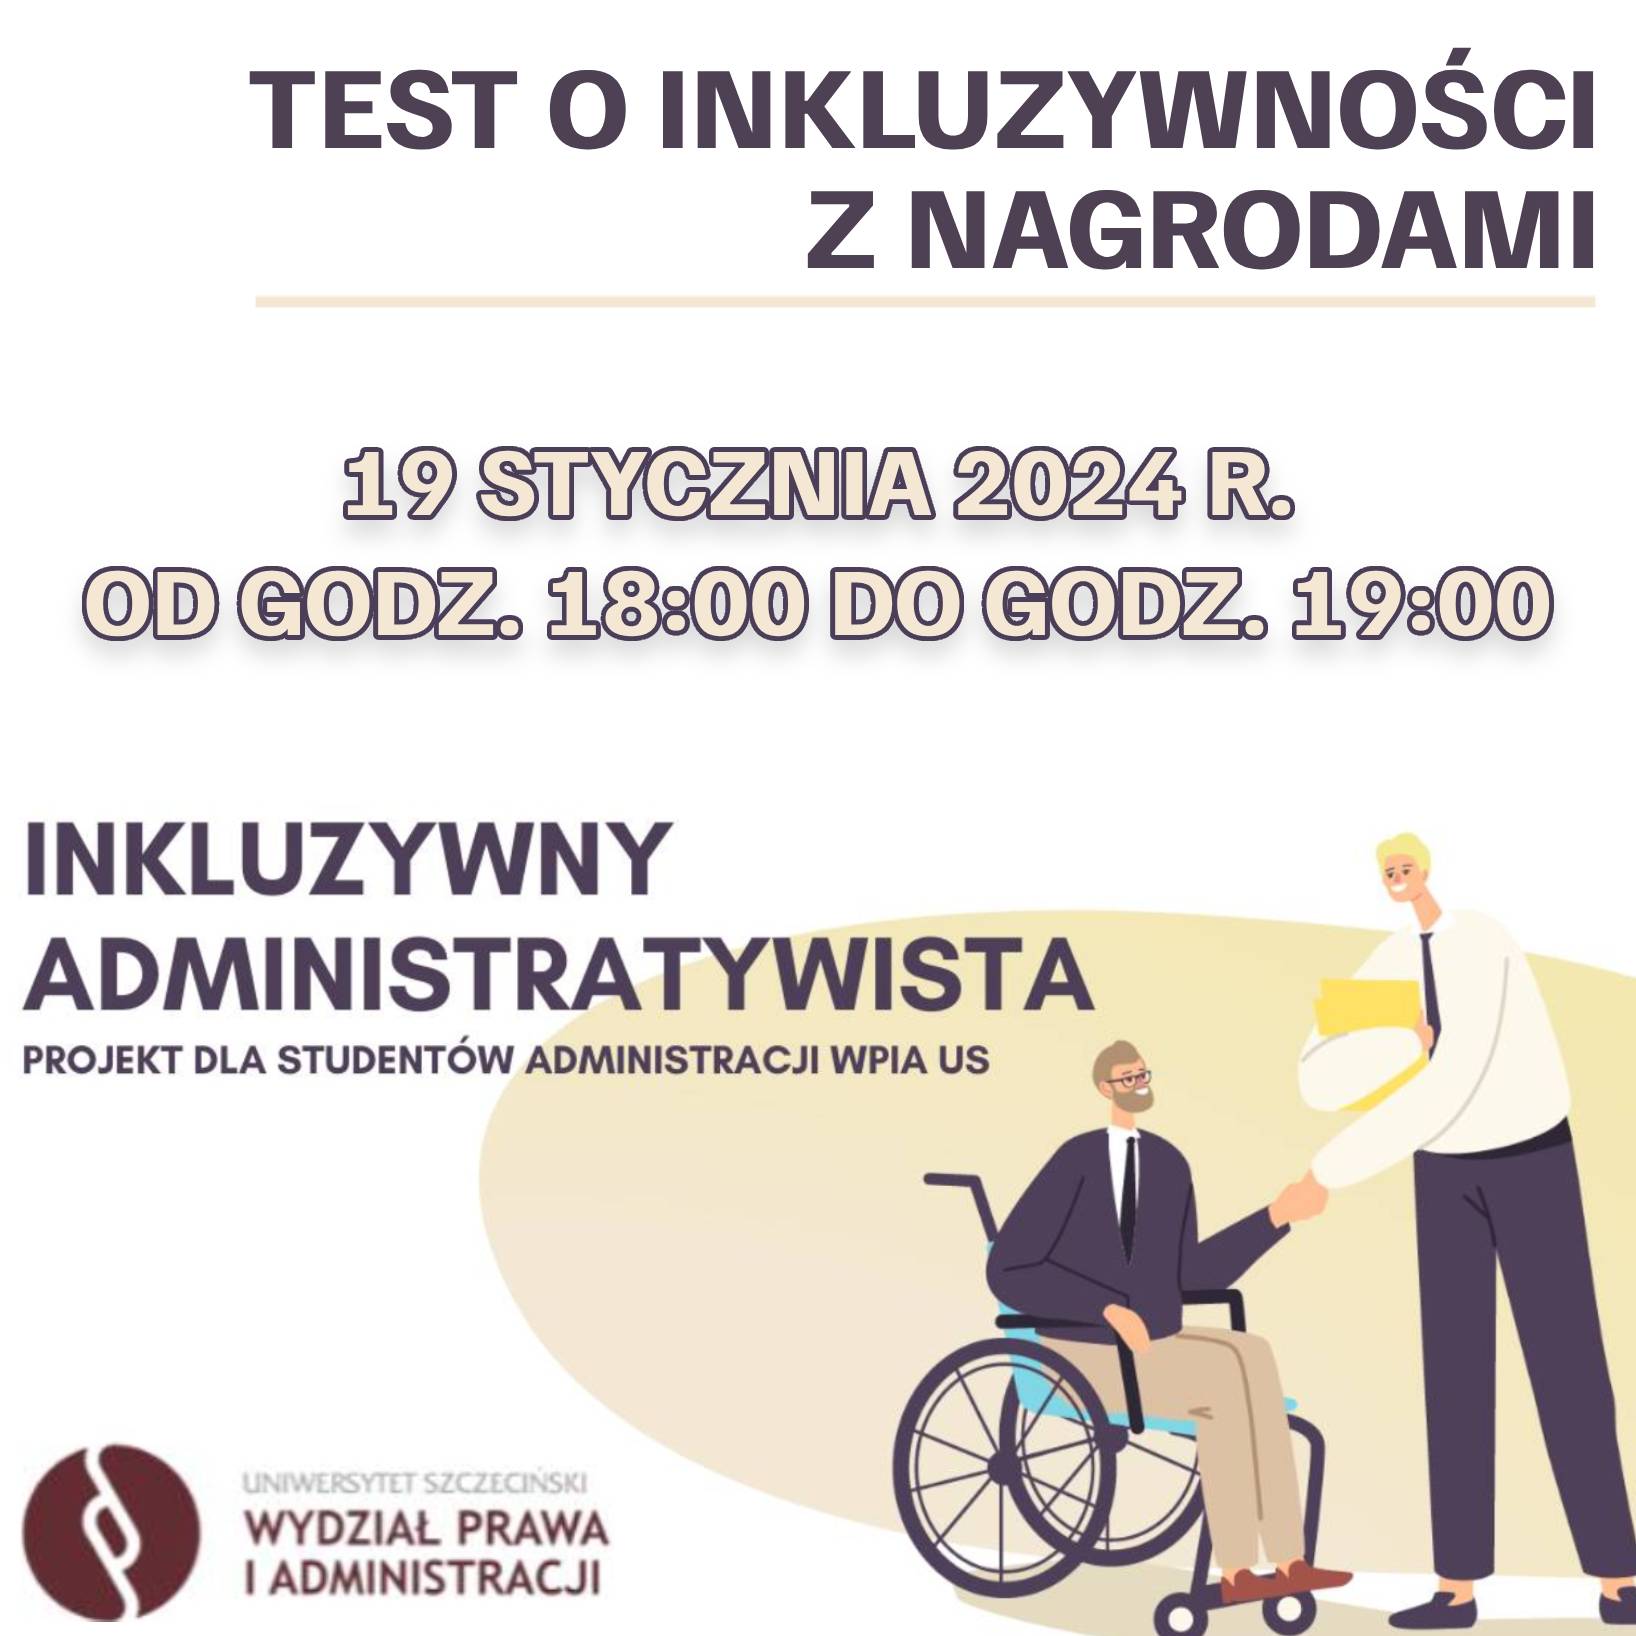 Inkluzywny administratywista – test